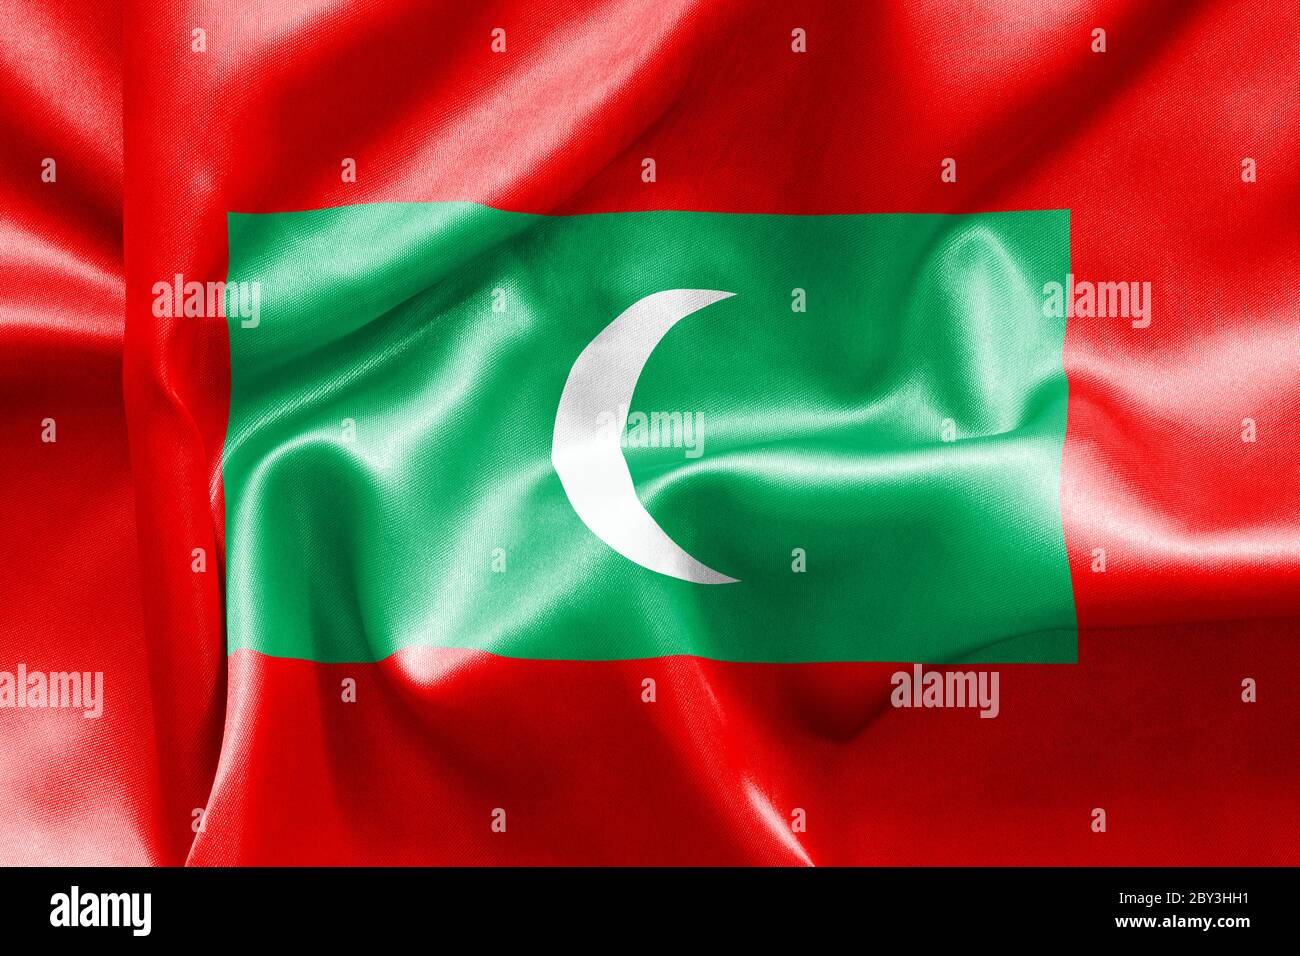 La texture du drapeau des Maldives s'est écroulée Banque D'Images